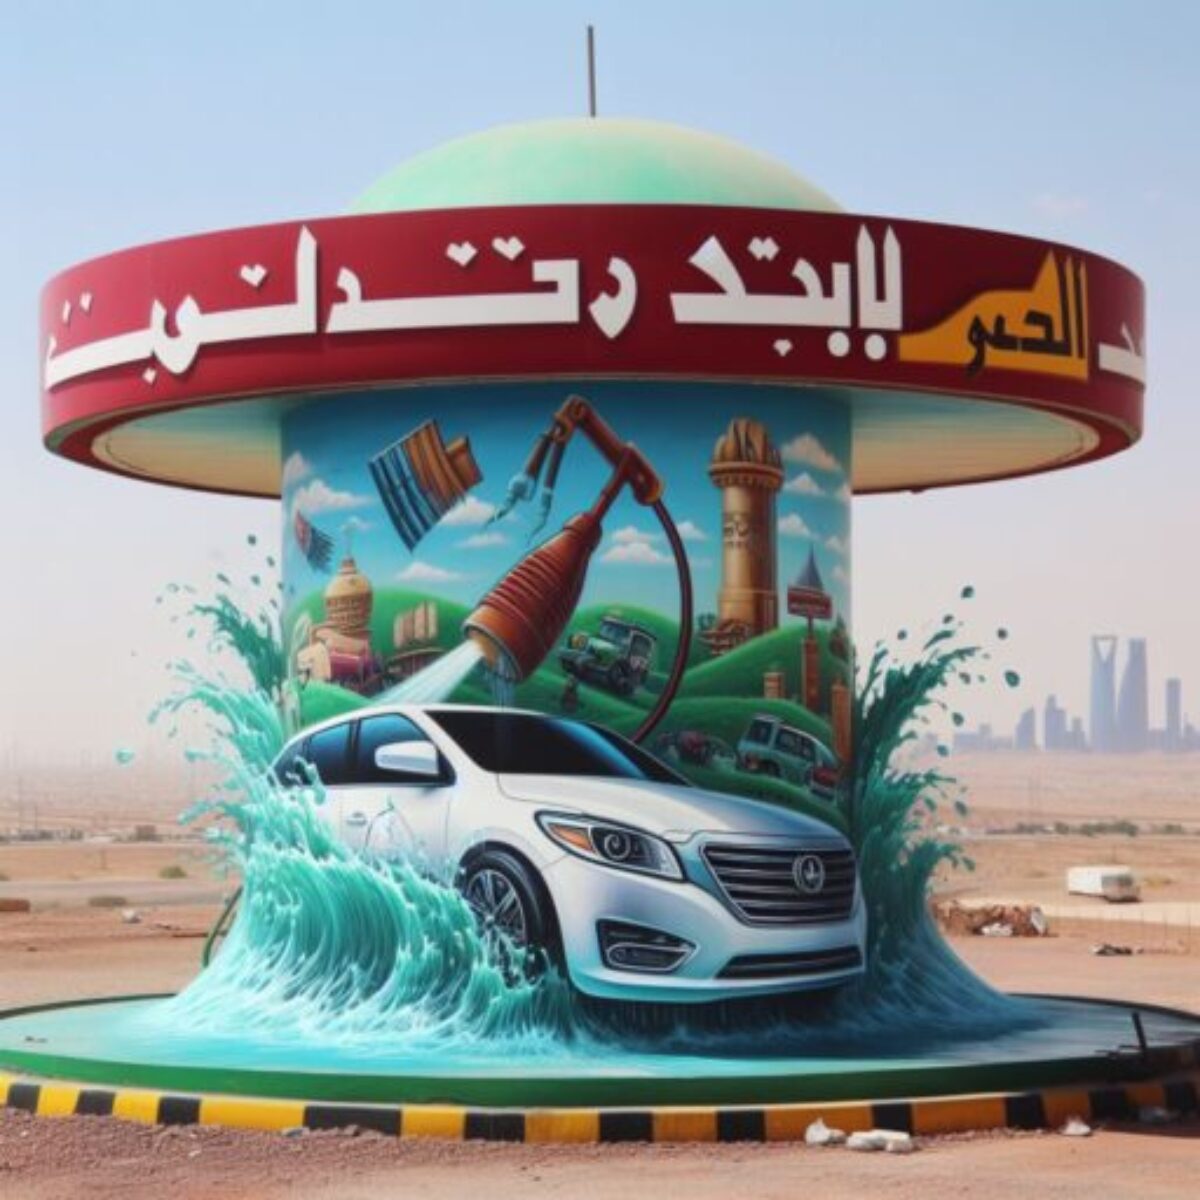 غسيل السيارات بالبخار في الرياض :مغسلة سولى استار - ‏الأسئلة الشائعة والإجابات عليها